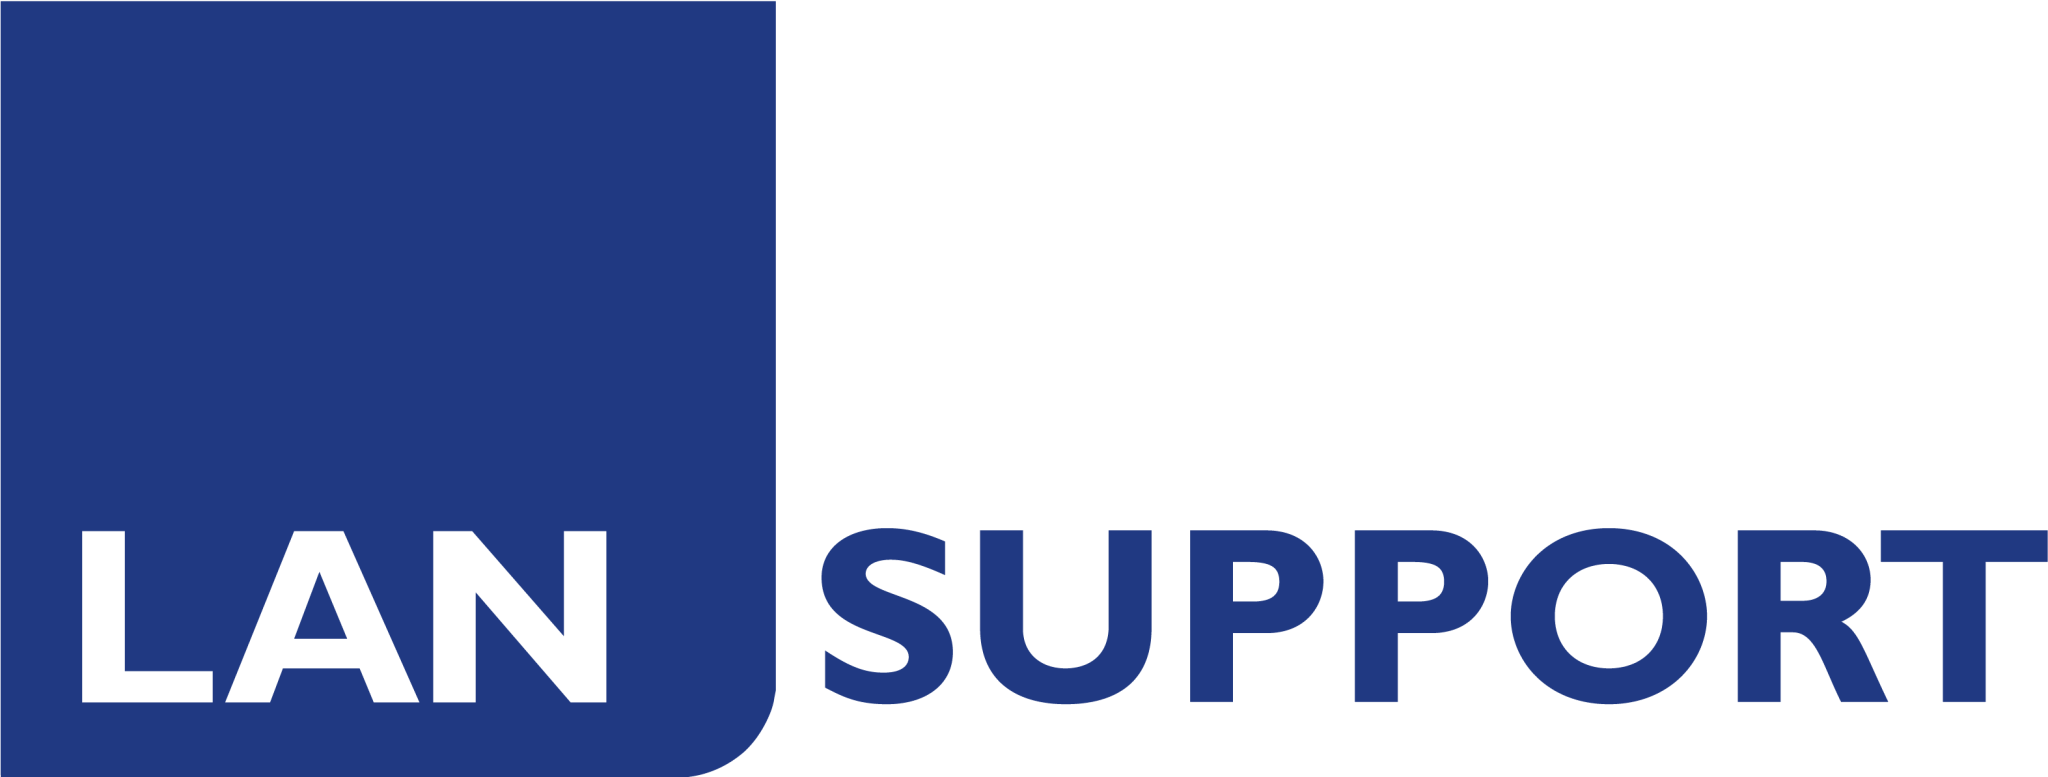 lan support logo B